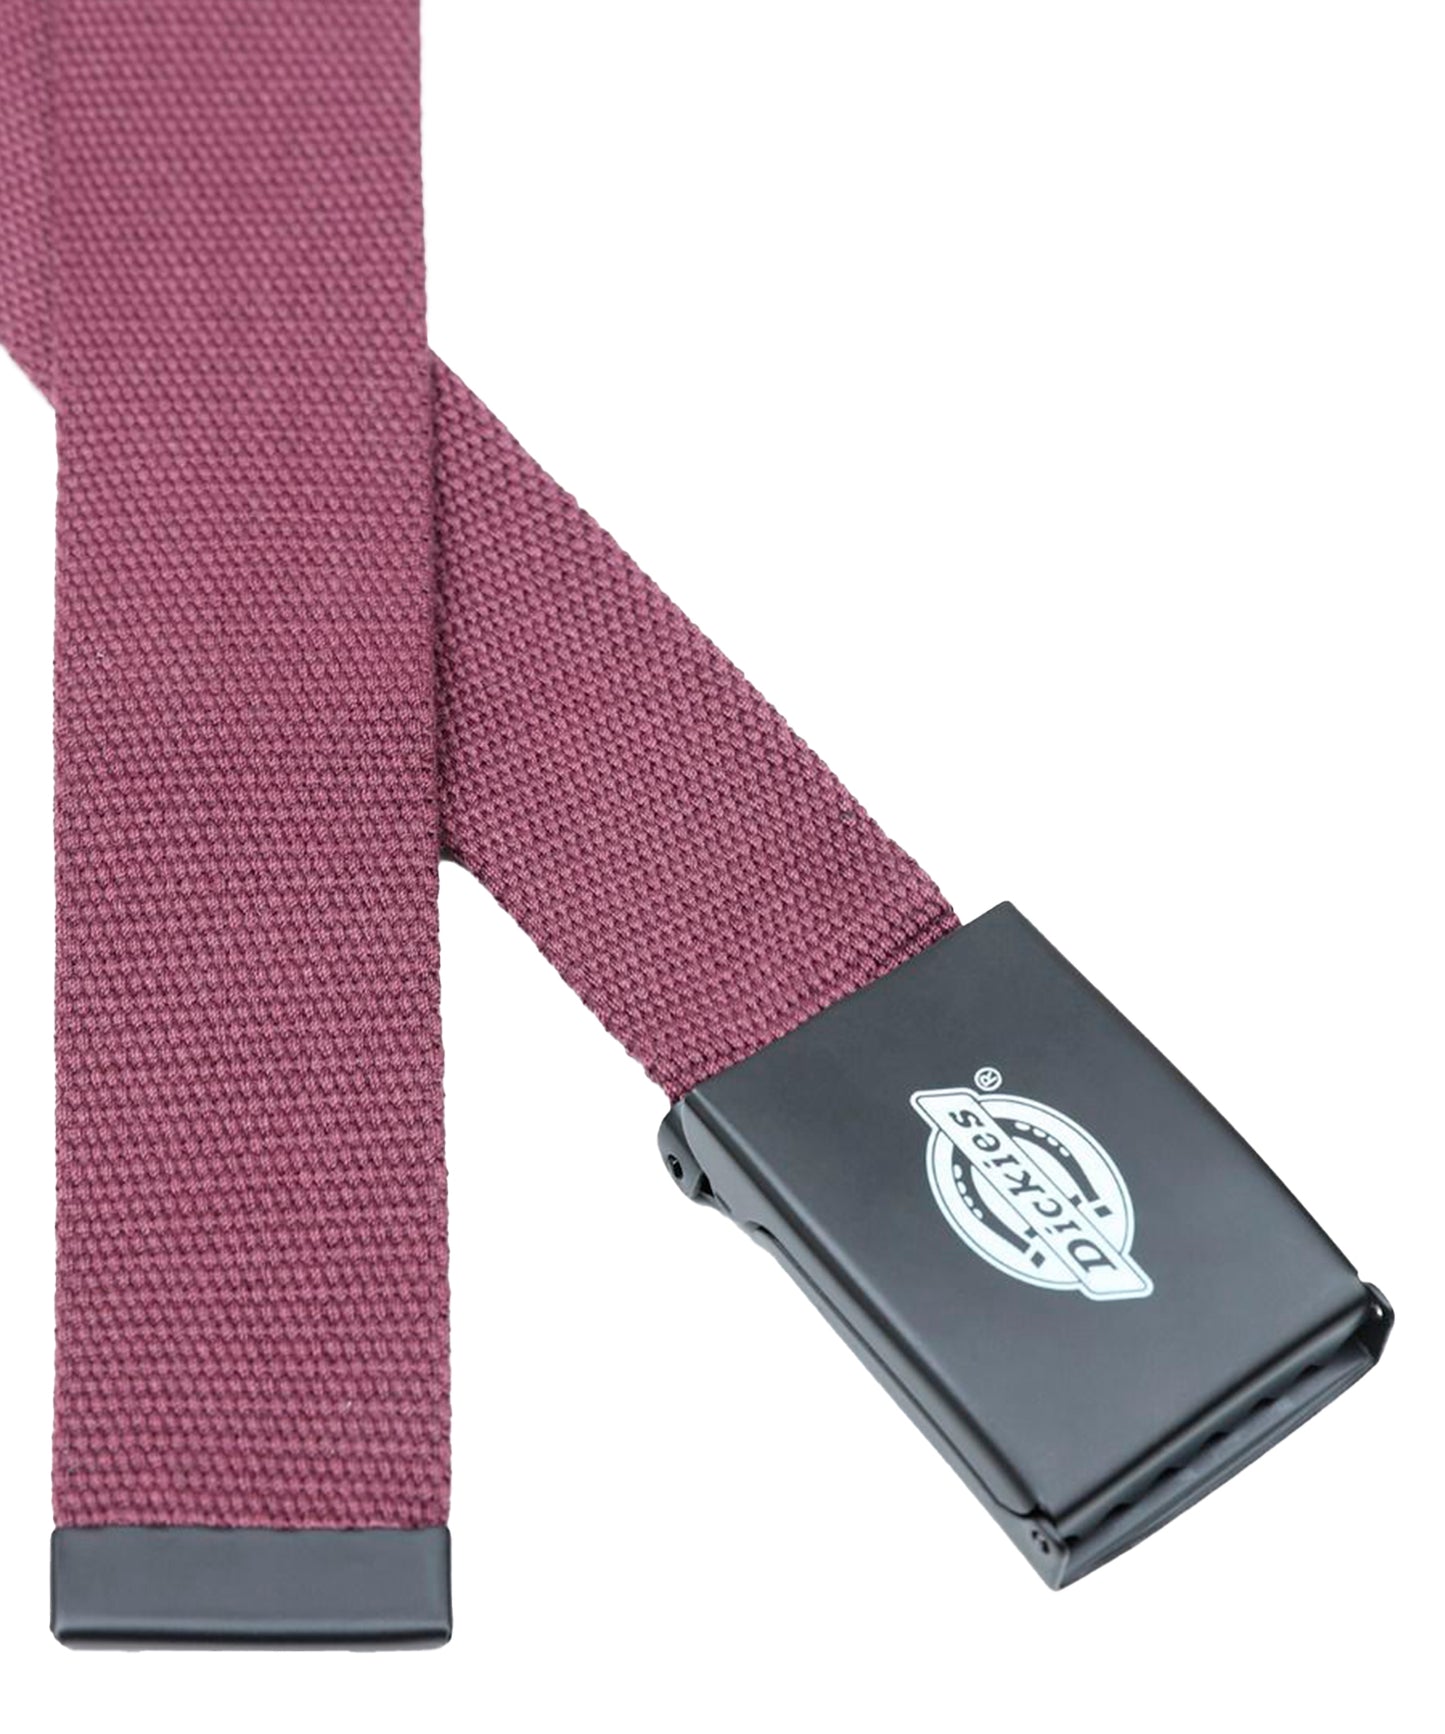 dickies cinturón loneta de color granate y hebilla metálica con logo de dickies